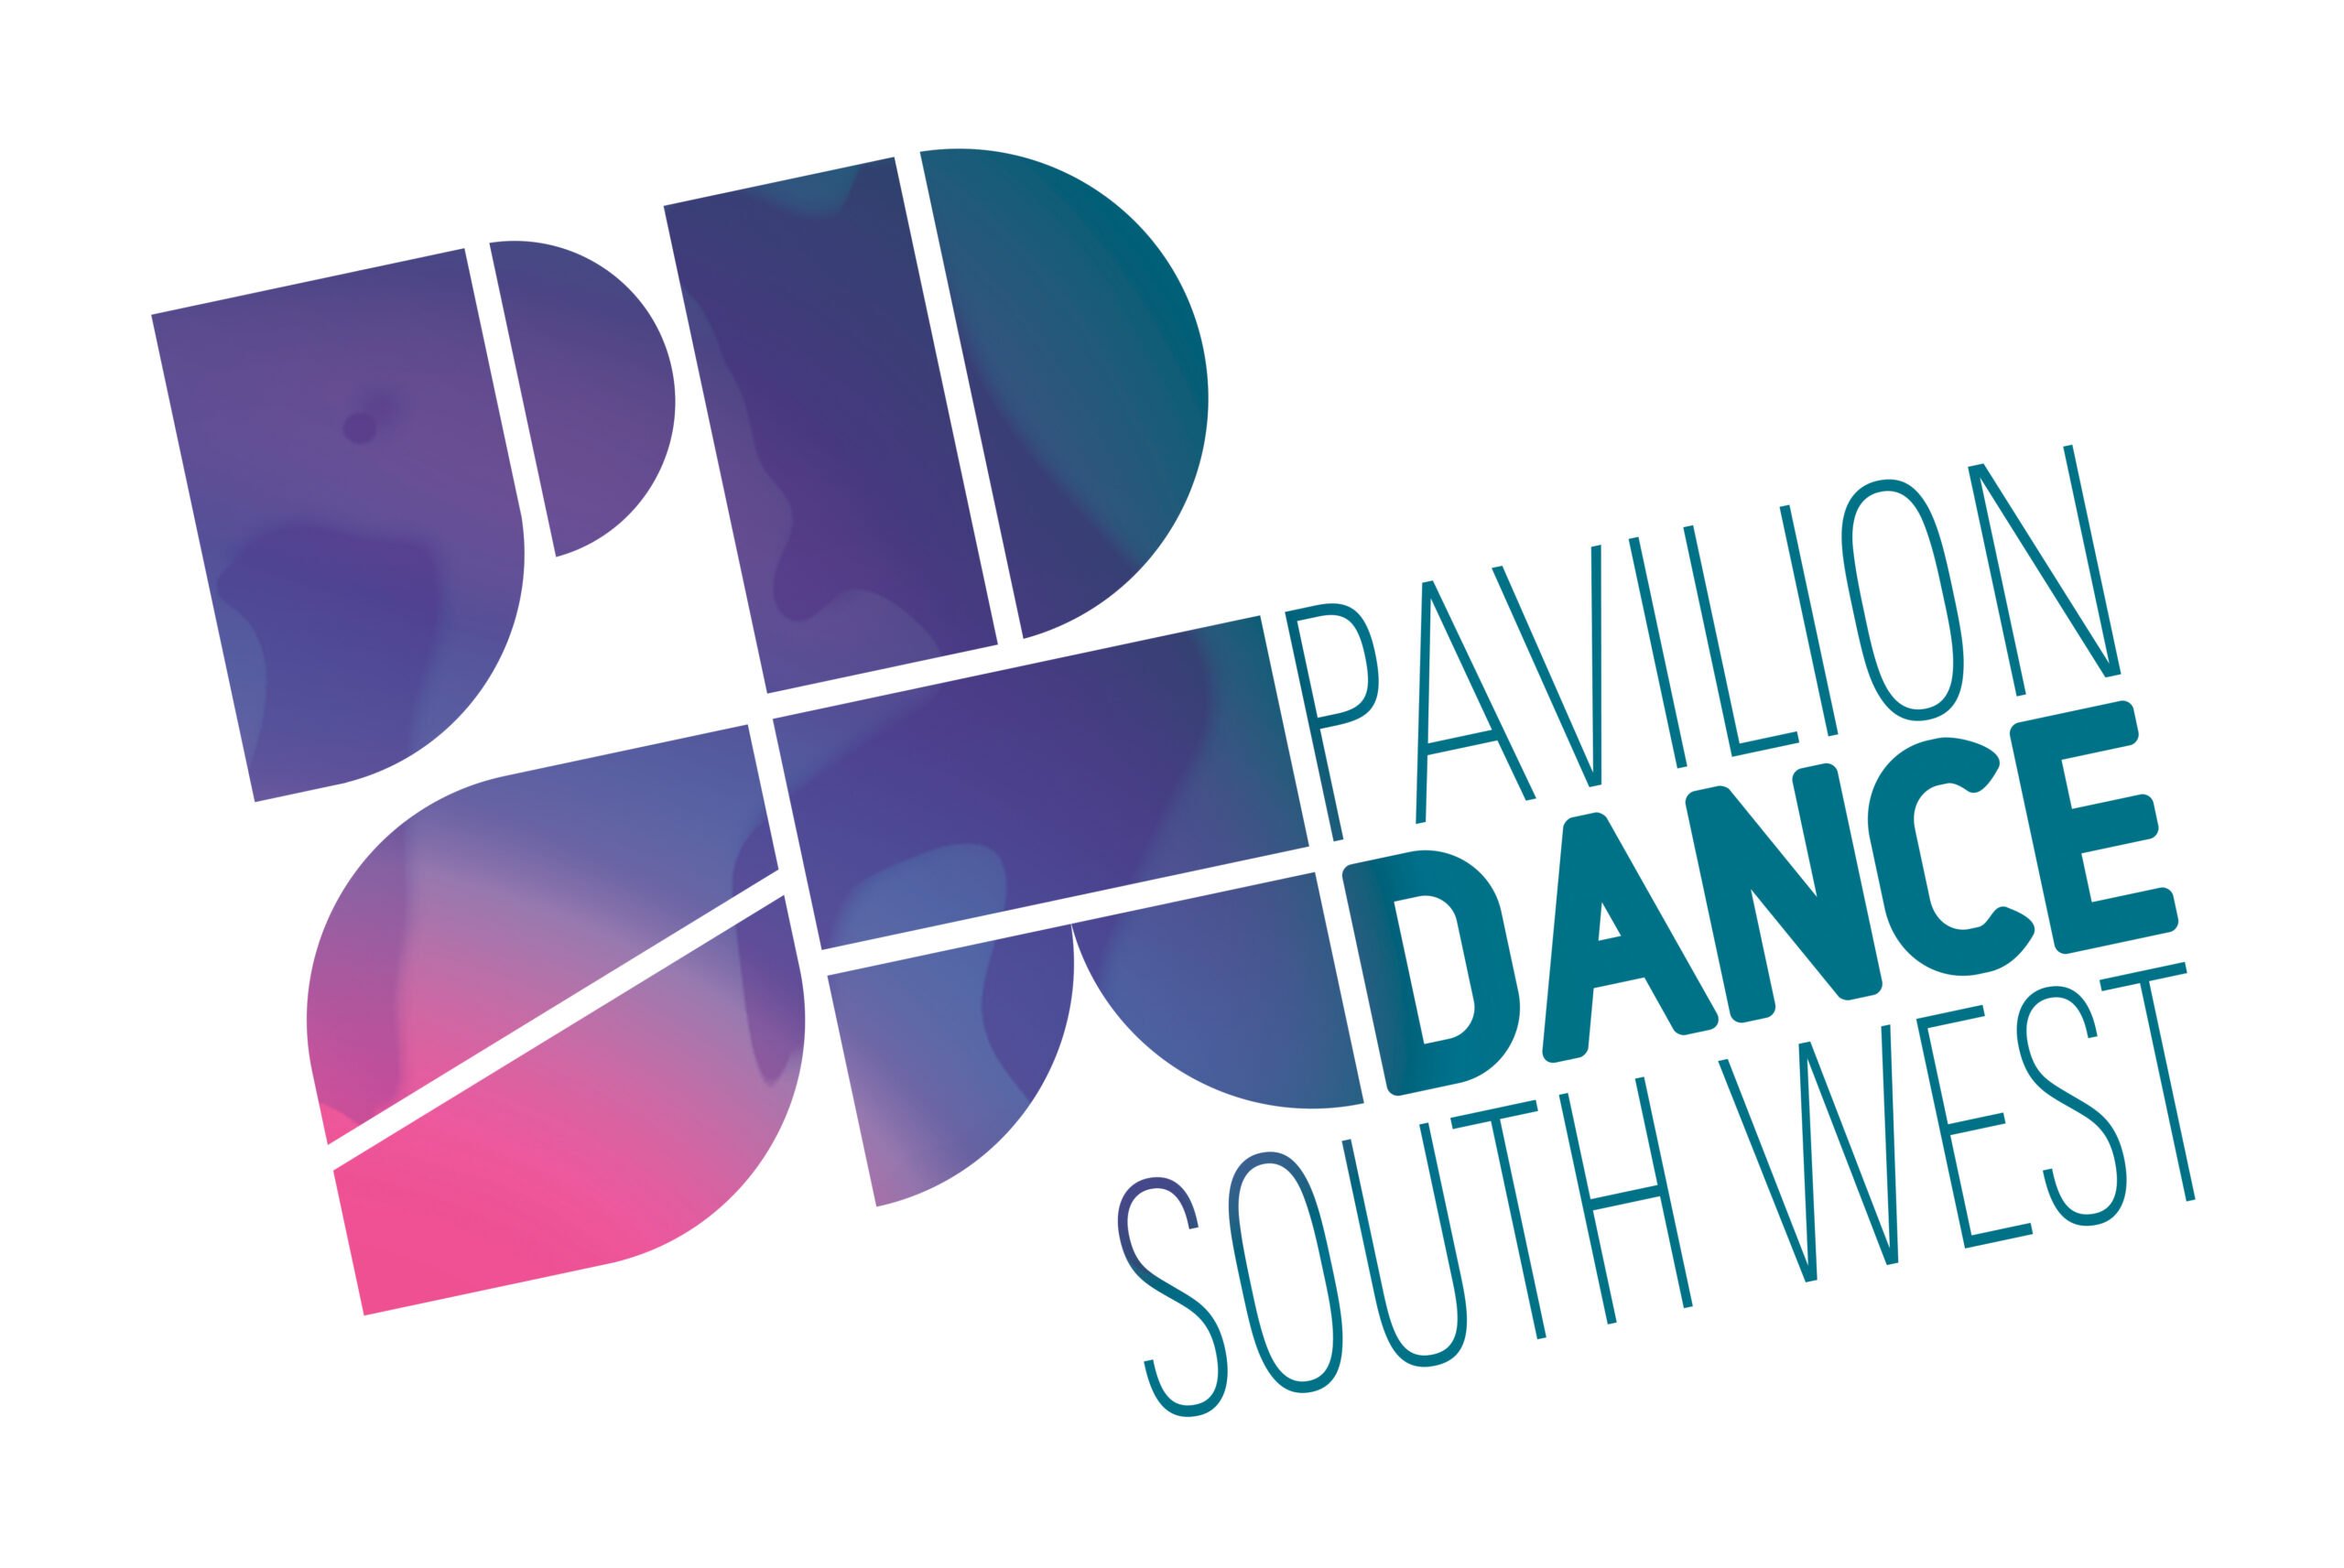 Pavilion Dance South West Logo